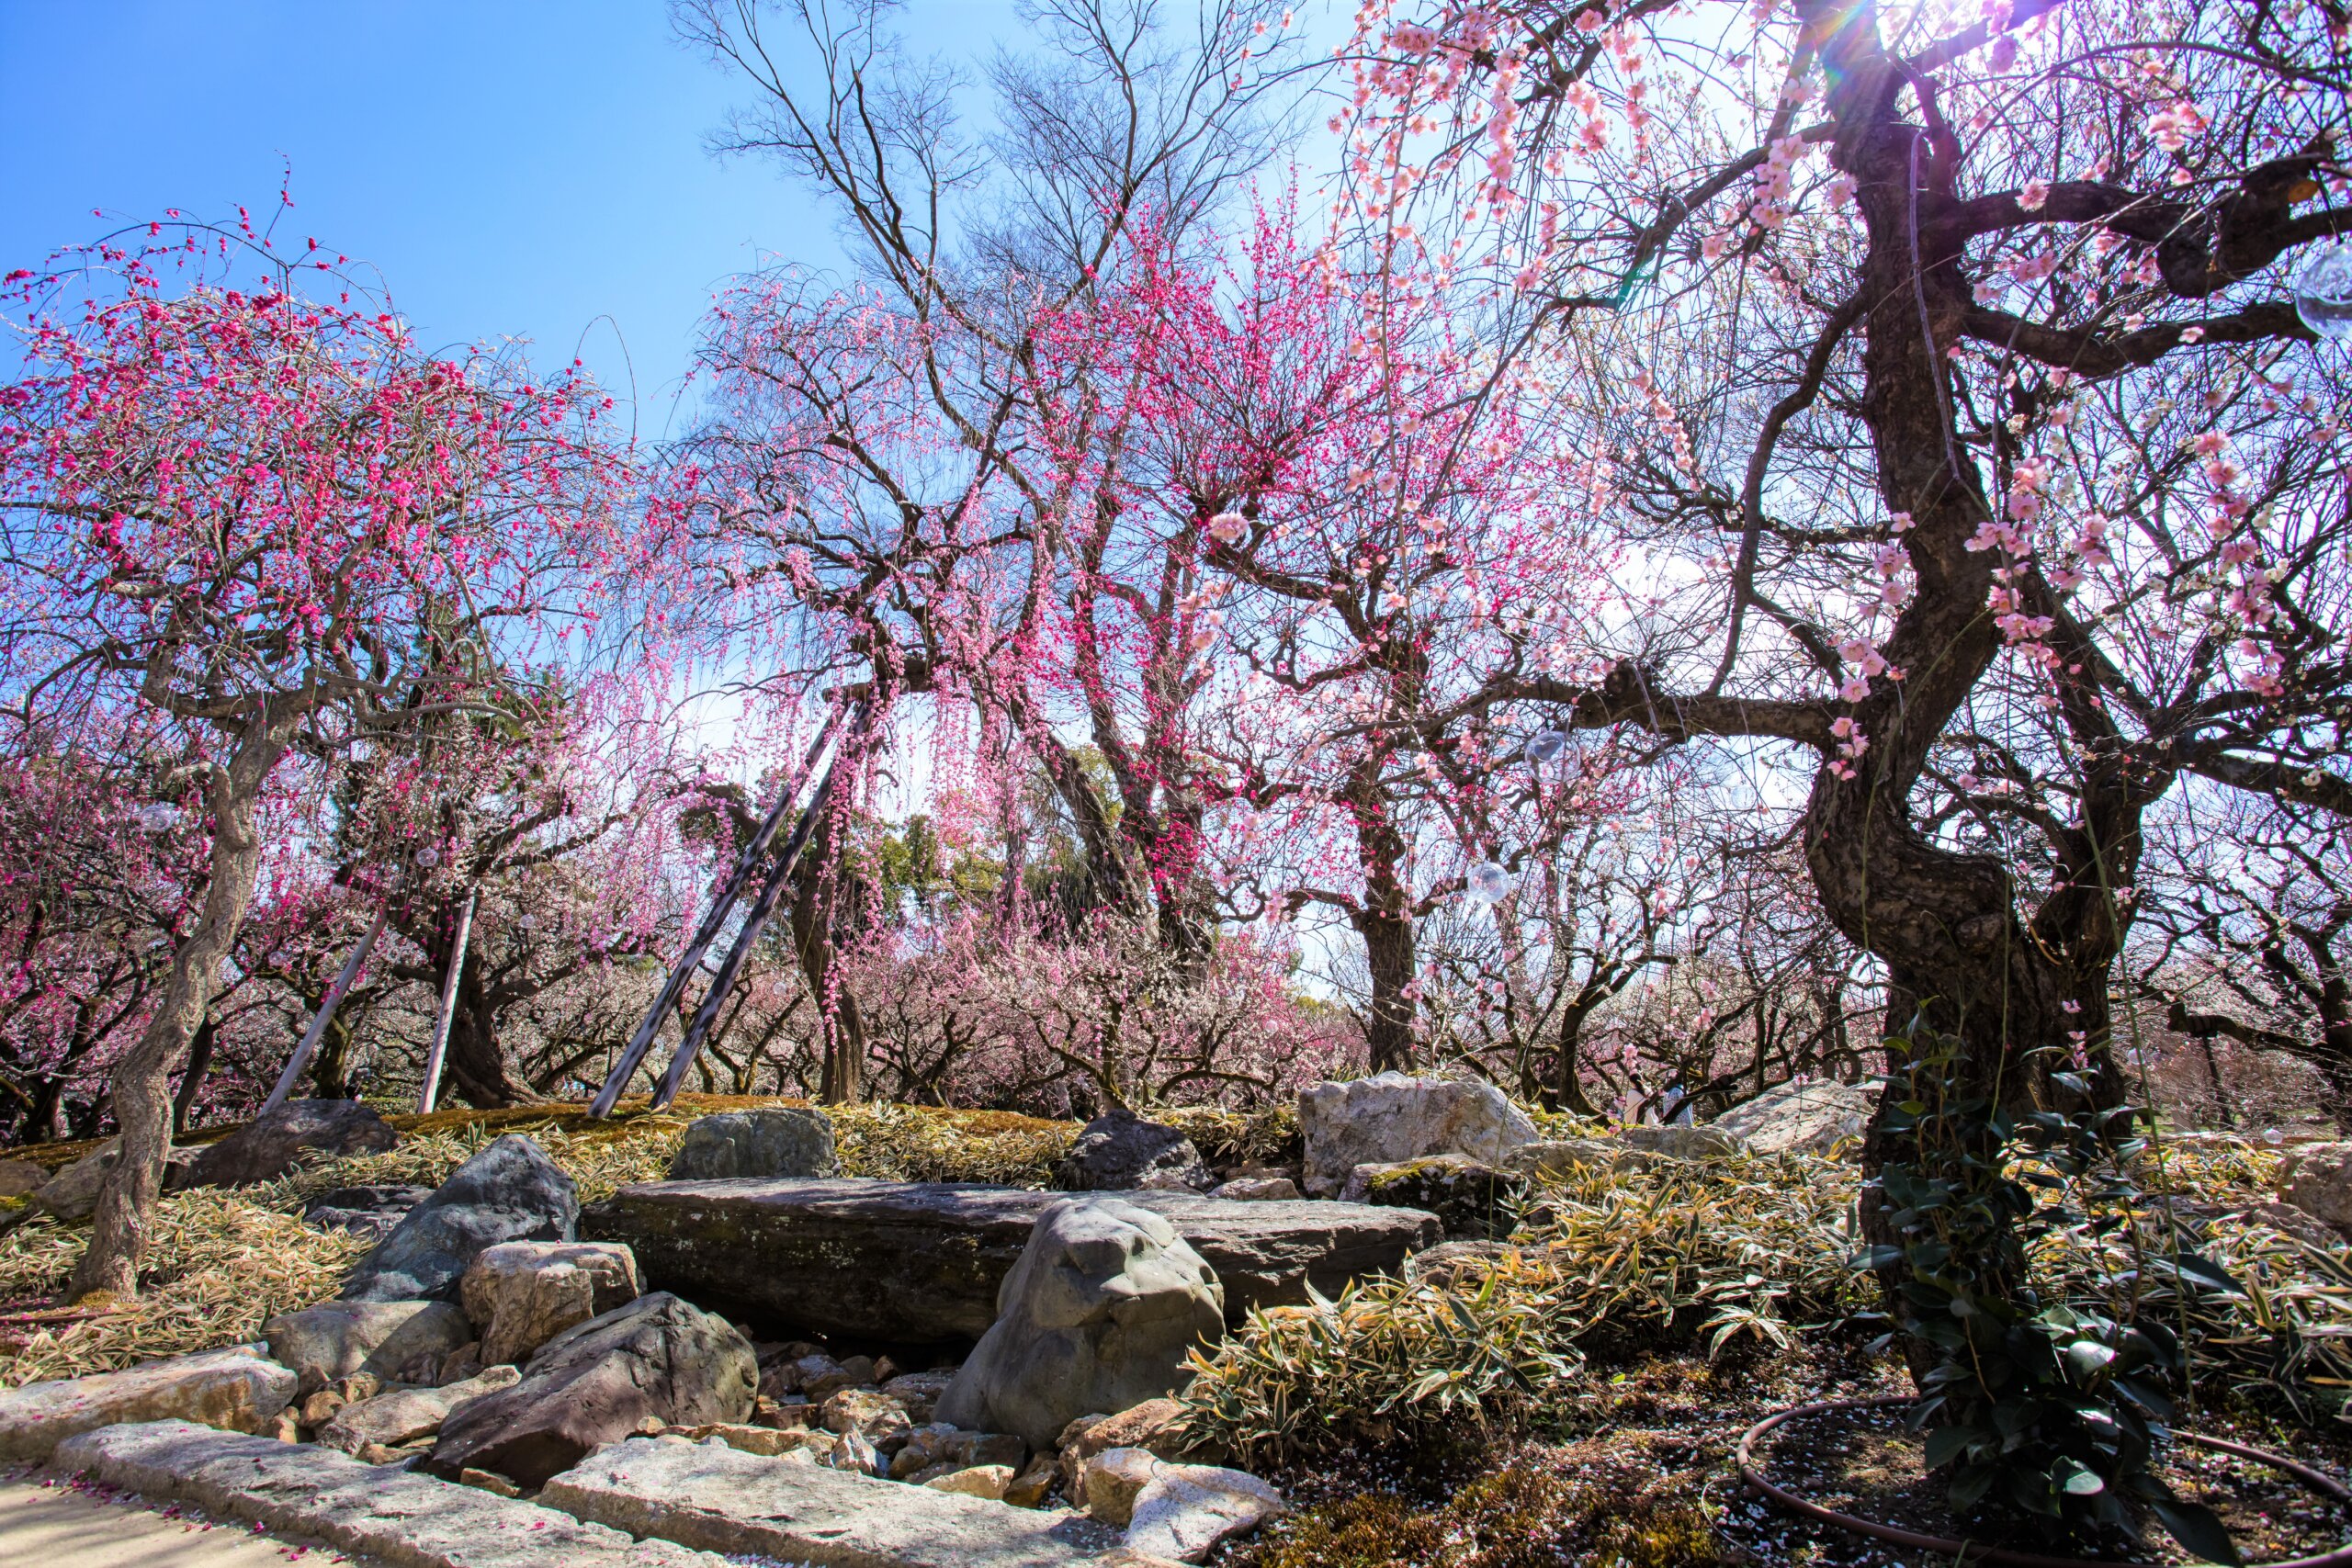 梅苑の梅の木に囲まれる姿で再興した石庭「花の庭」。今回の再興では梅苑を360度見渡すことができる展望台も新たに整備された